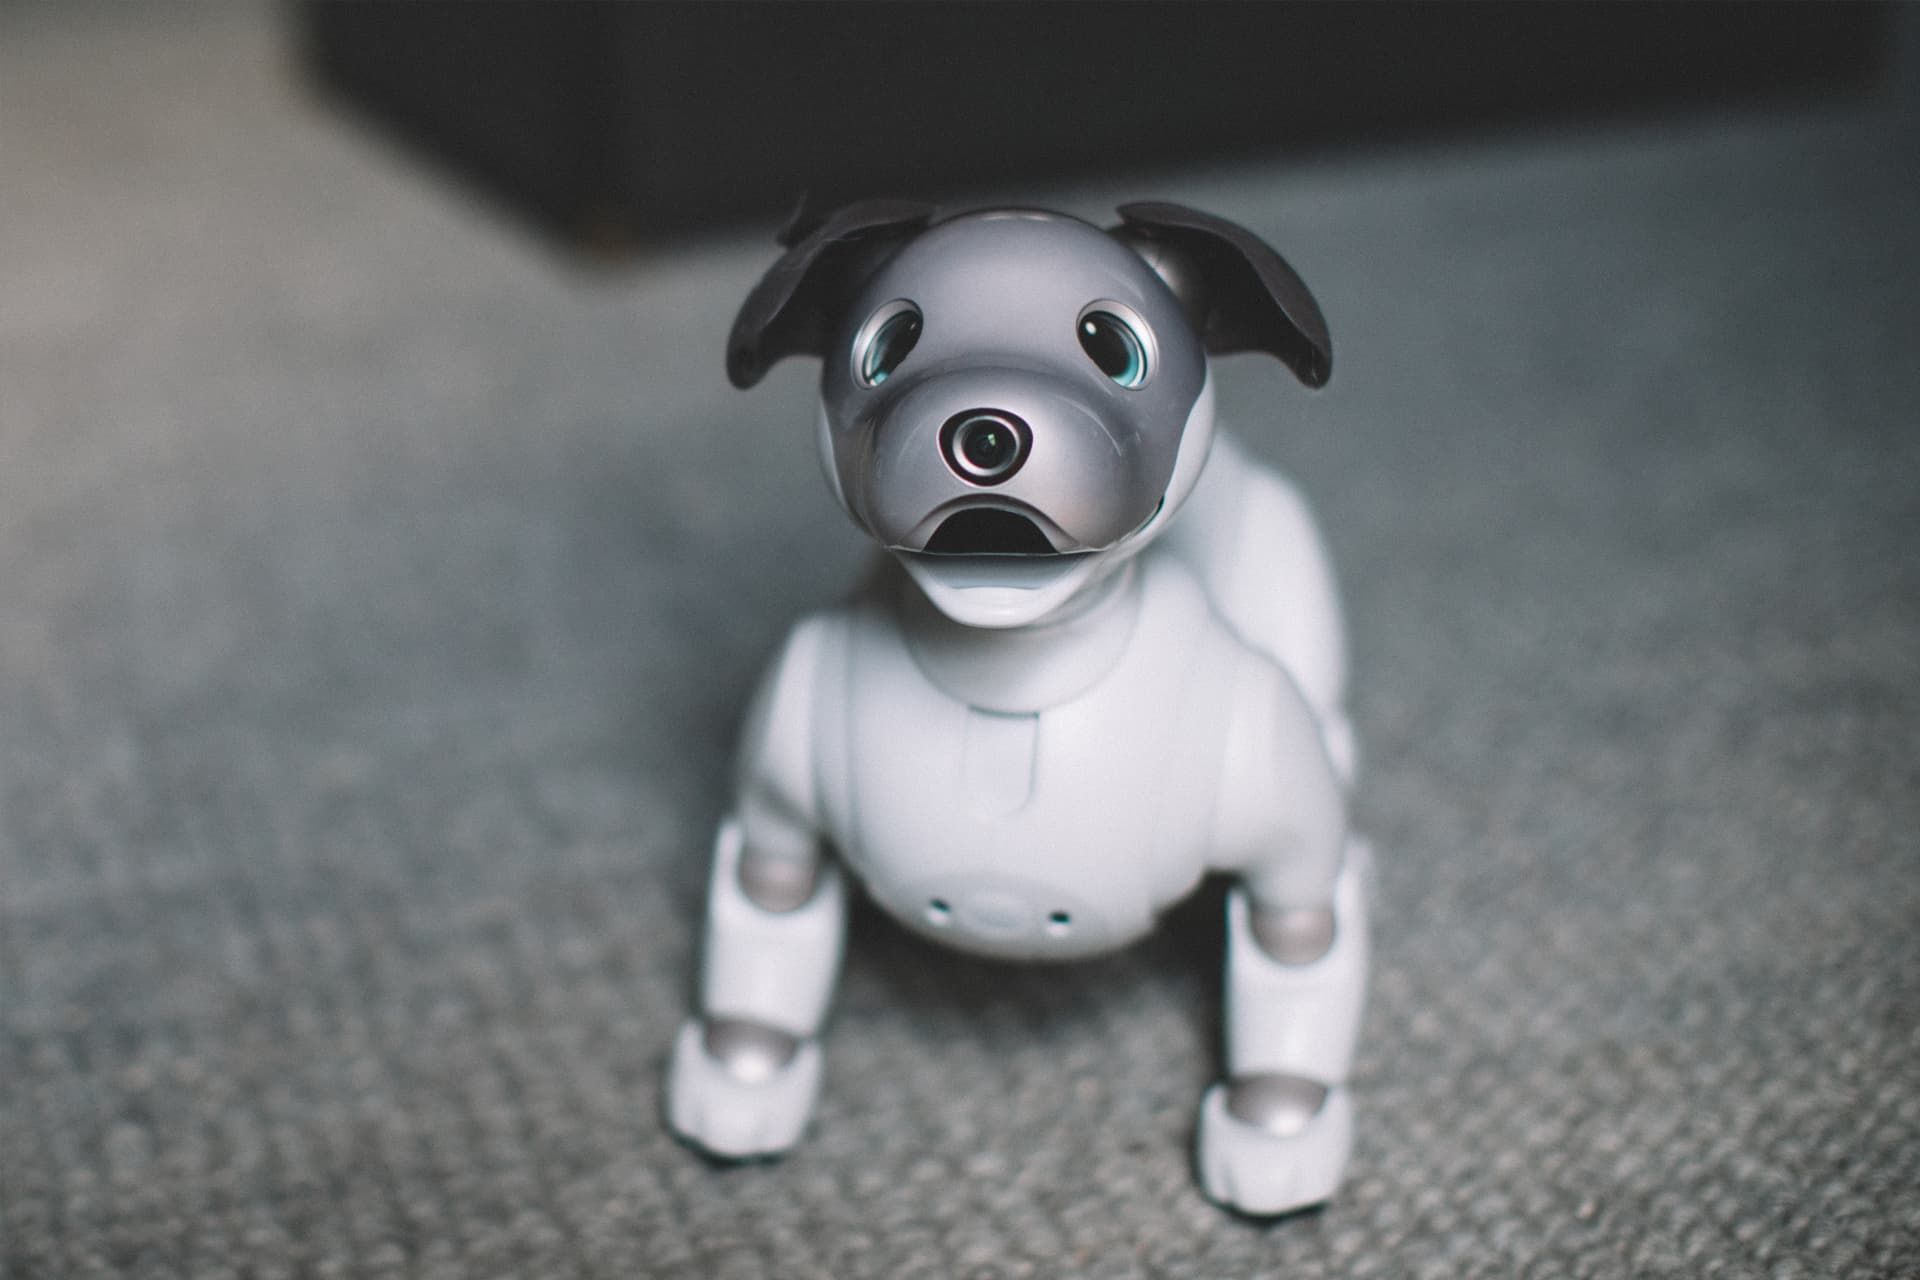 سگ رباتیک سونی Aibo از نمای جلو